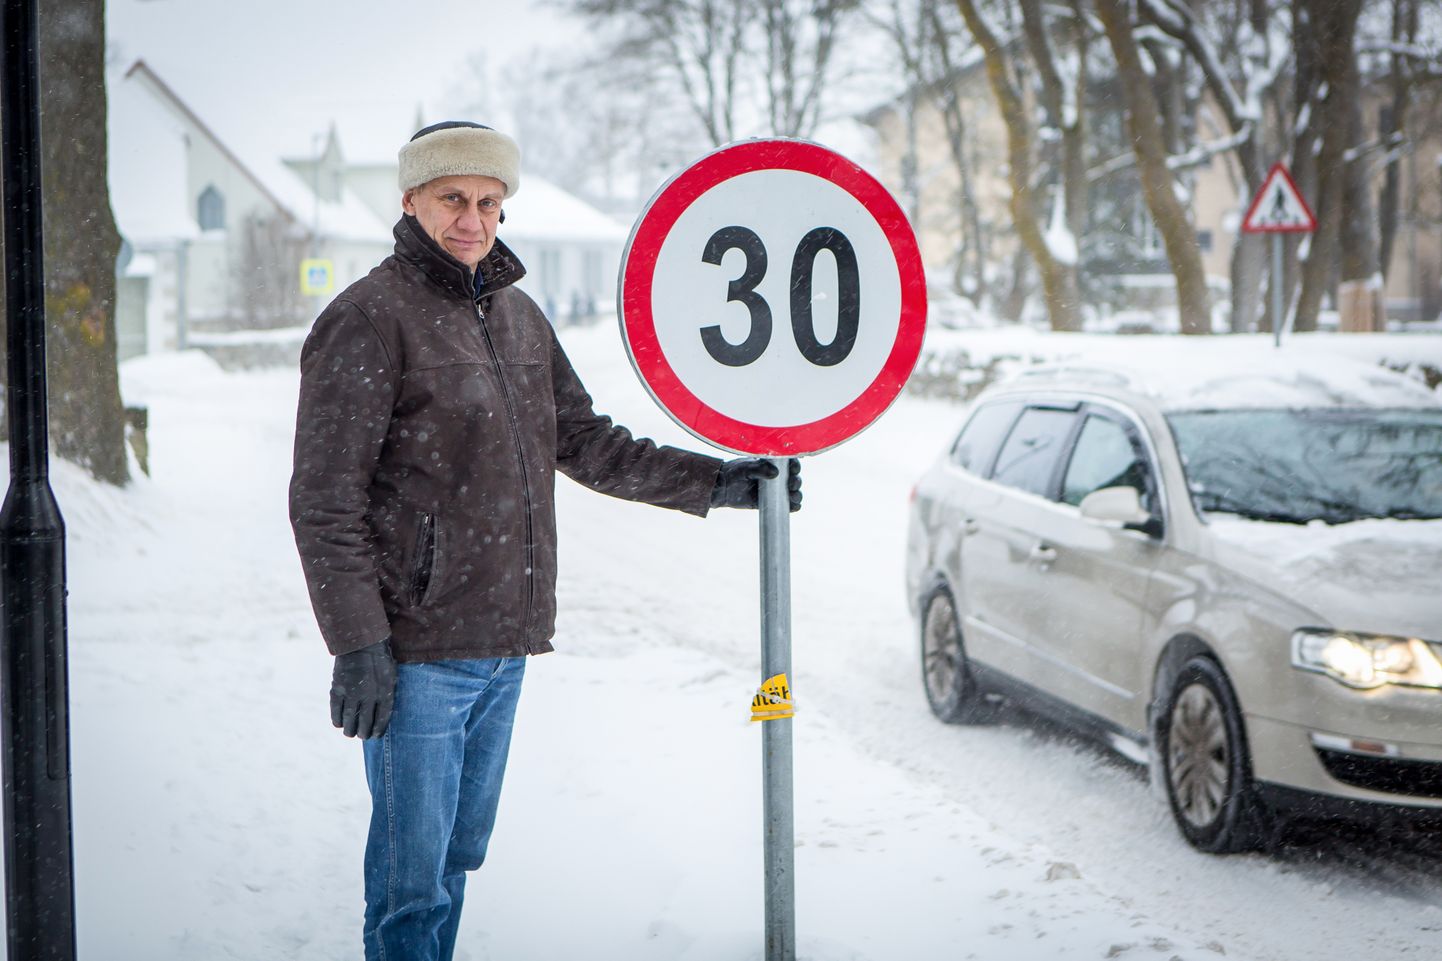 TAGAKS TURVALISUSE: Anton Terase arvates võiks kogu linnas kehtida kiiruspiirang 30 km/h.
Maanus Masing